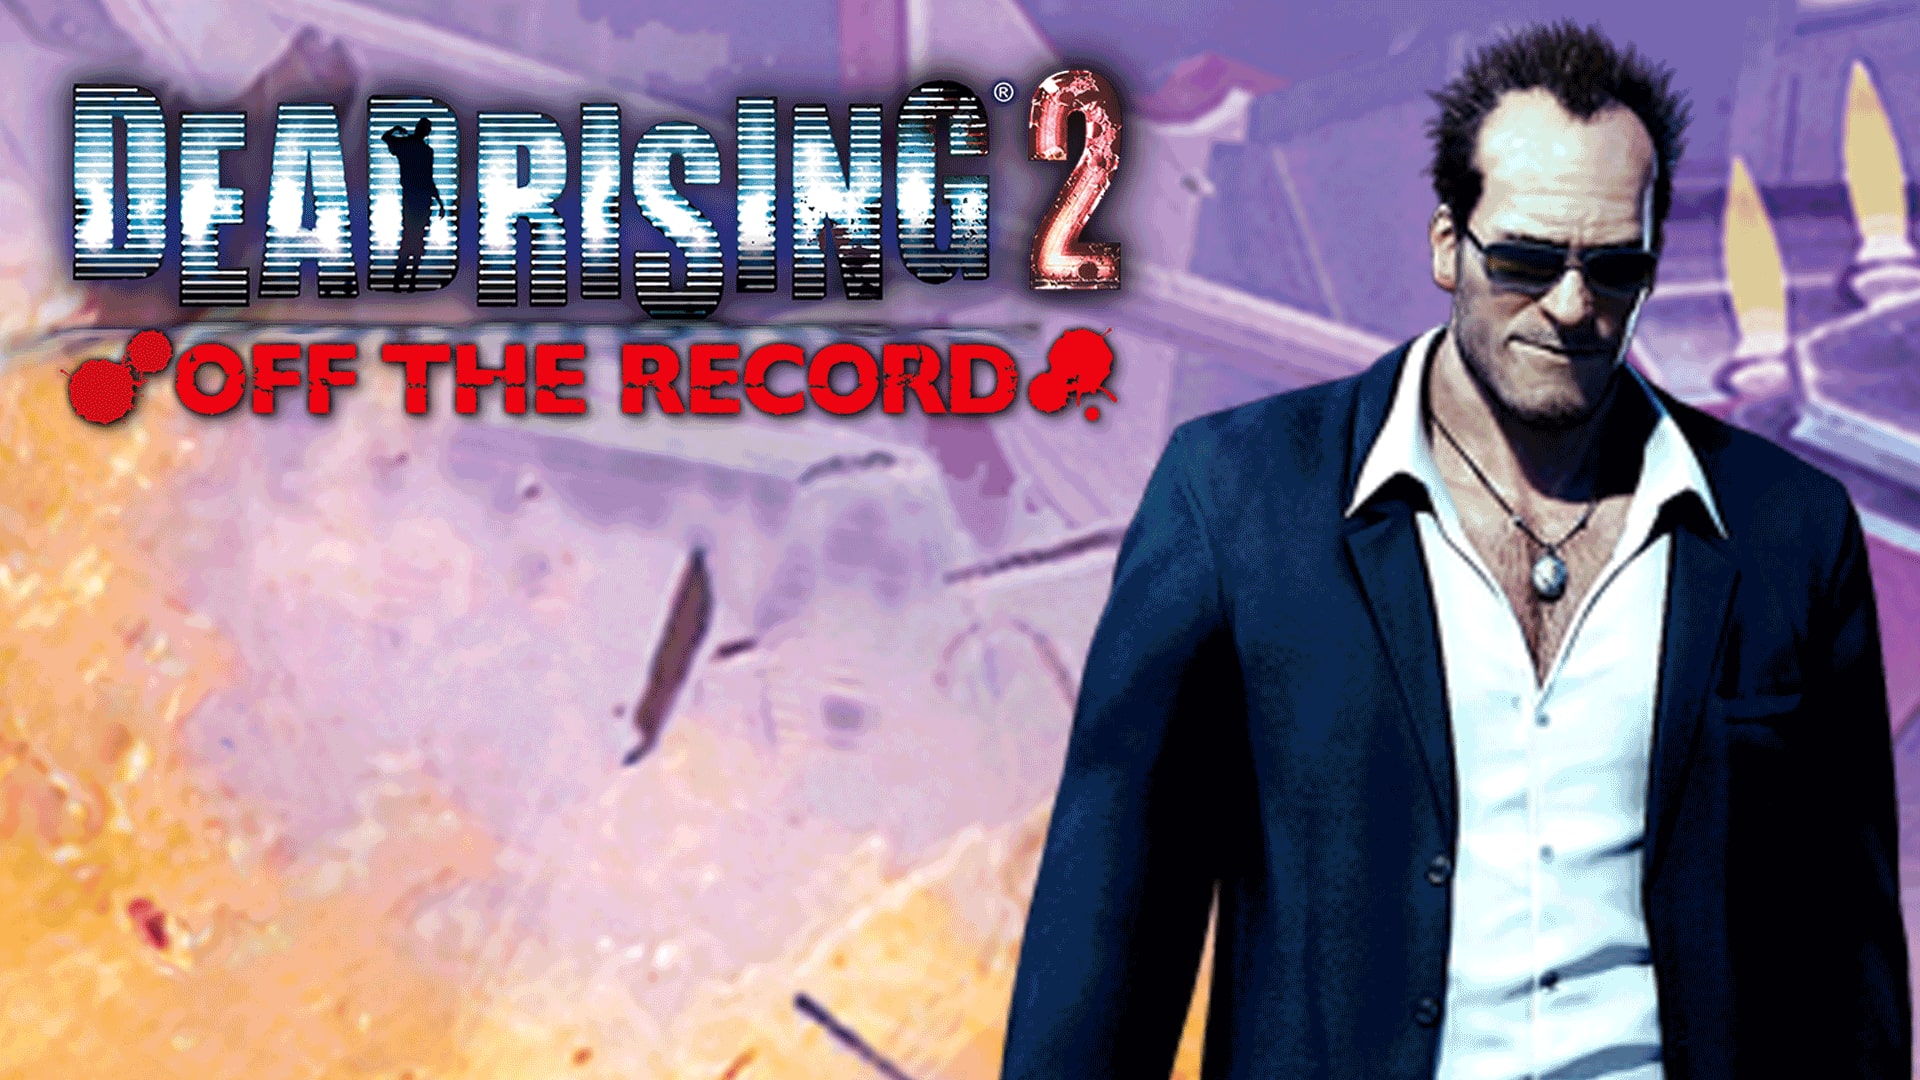 Jogo Dead Rising 2: Off the Record PlayStation 3 Capcom em Promoção é no  Bondfaro